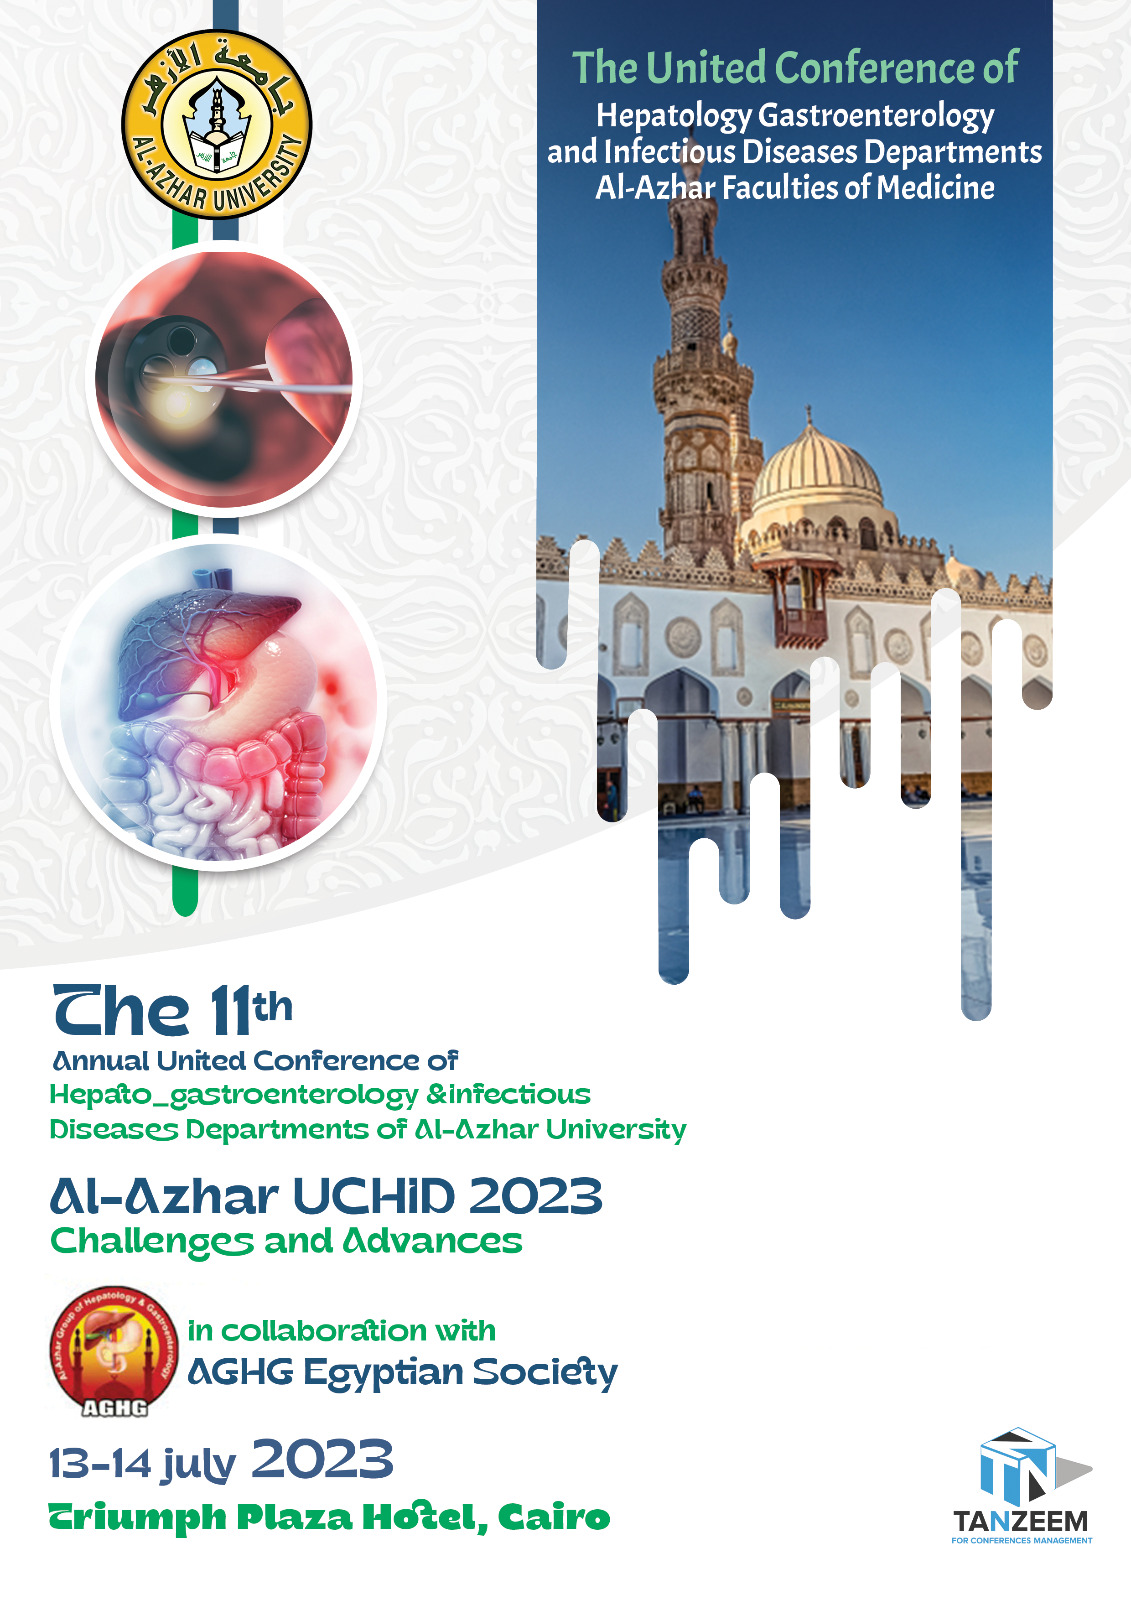 Al-Azhar UCHID 2023